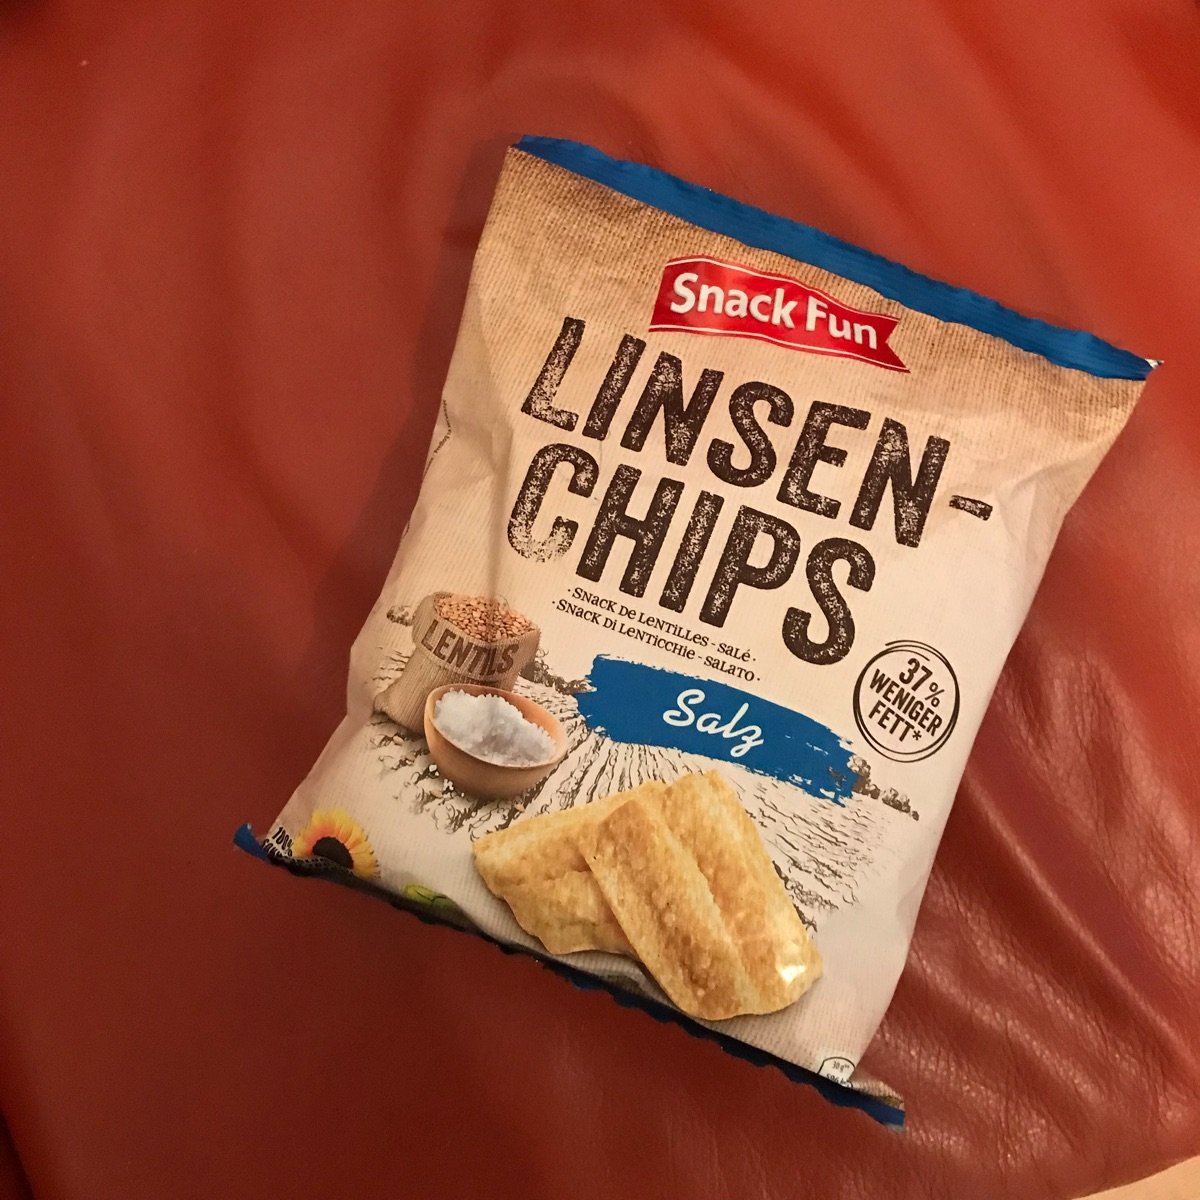 Linsen Chips Sour Cream